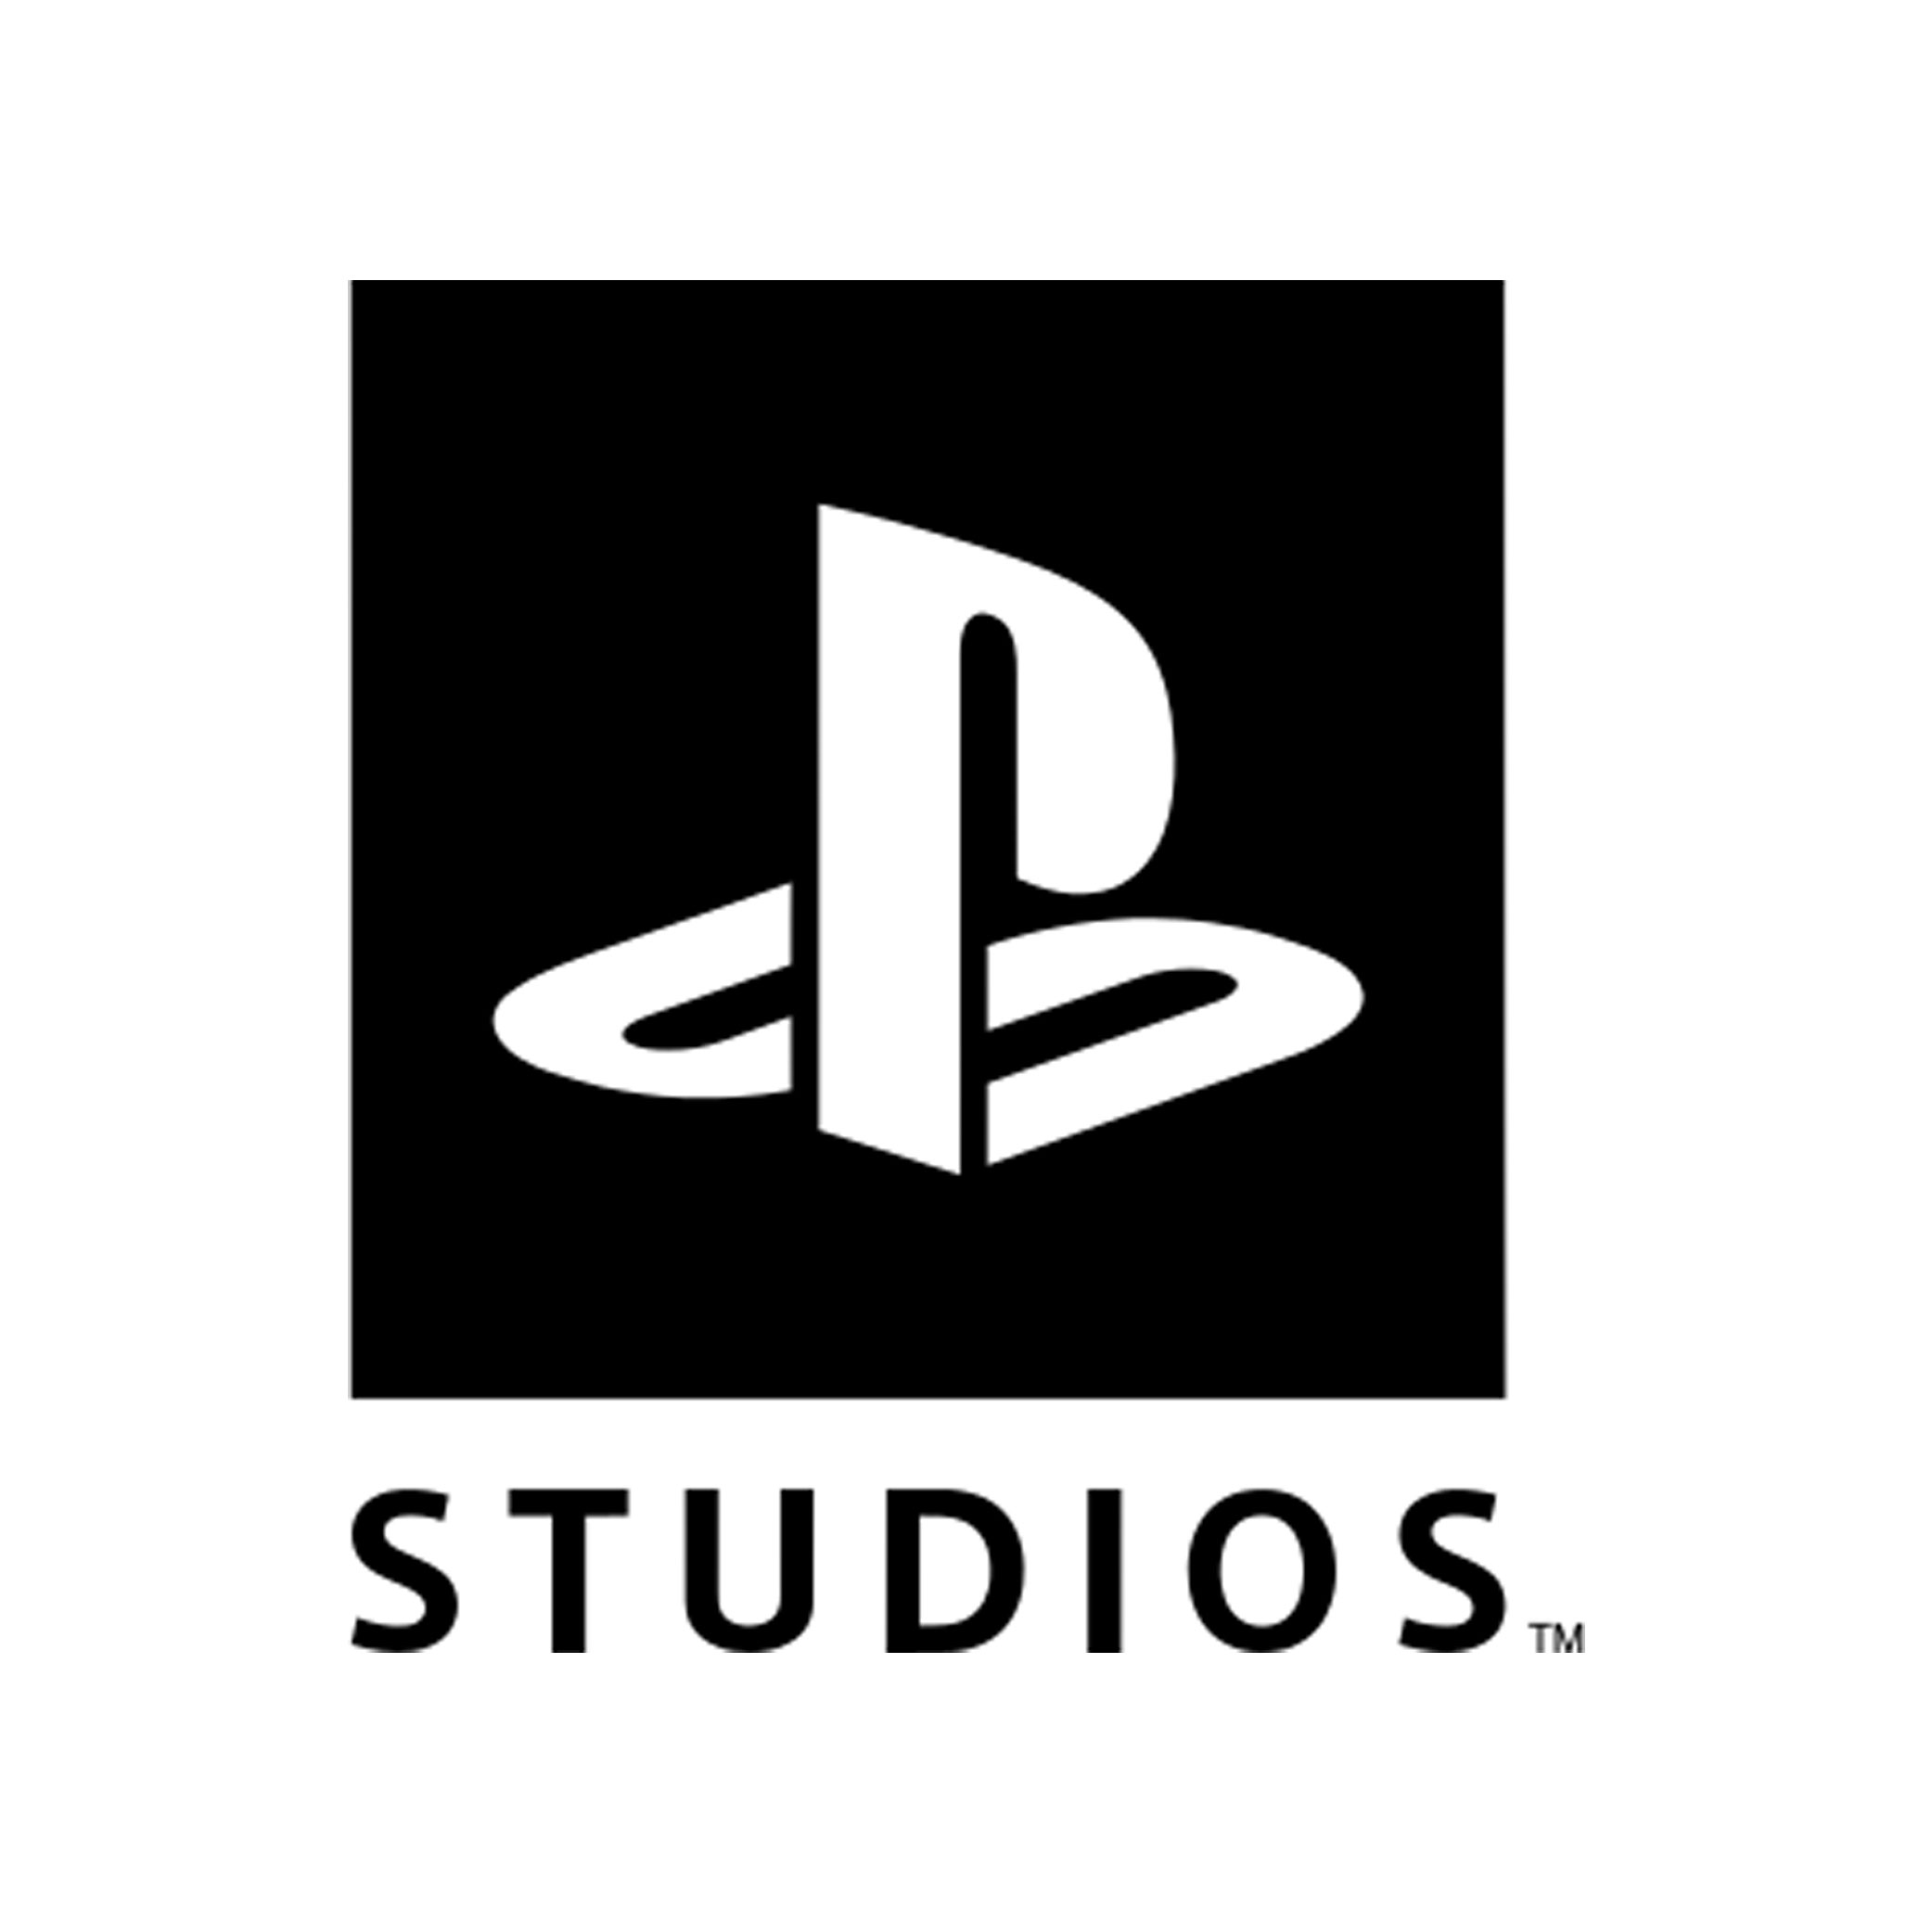 Playstation Studios Company Logo